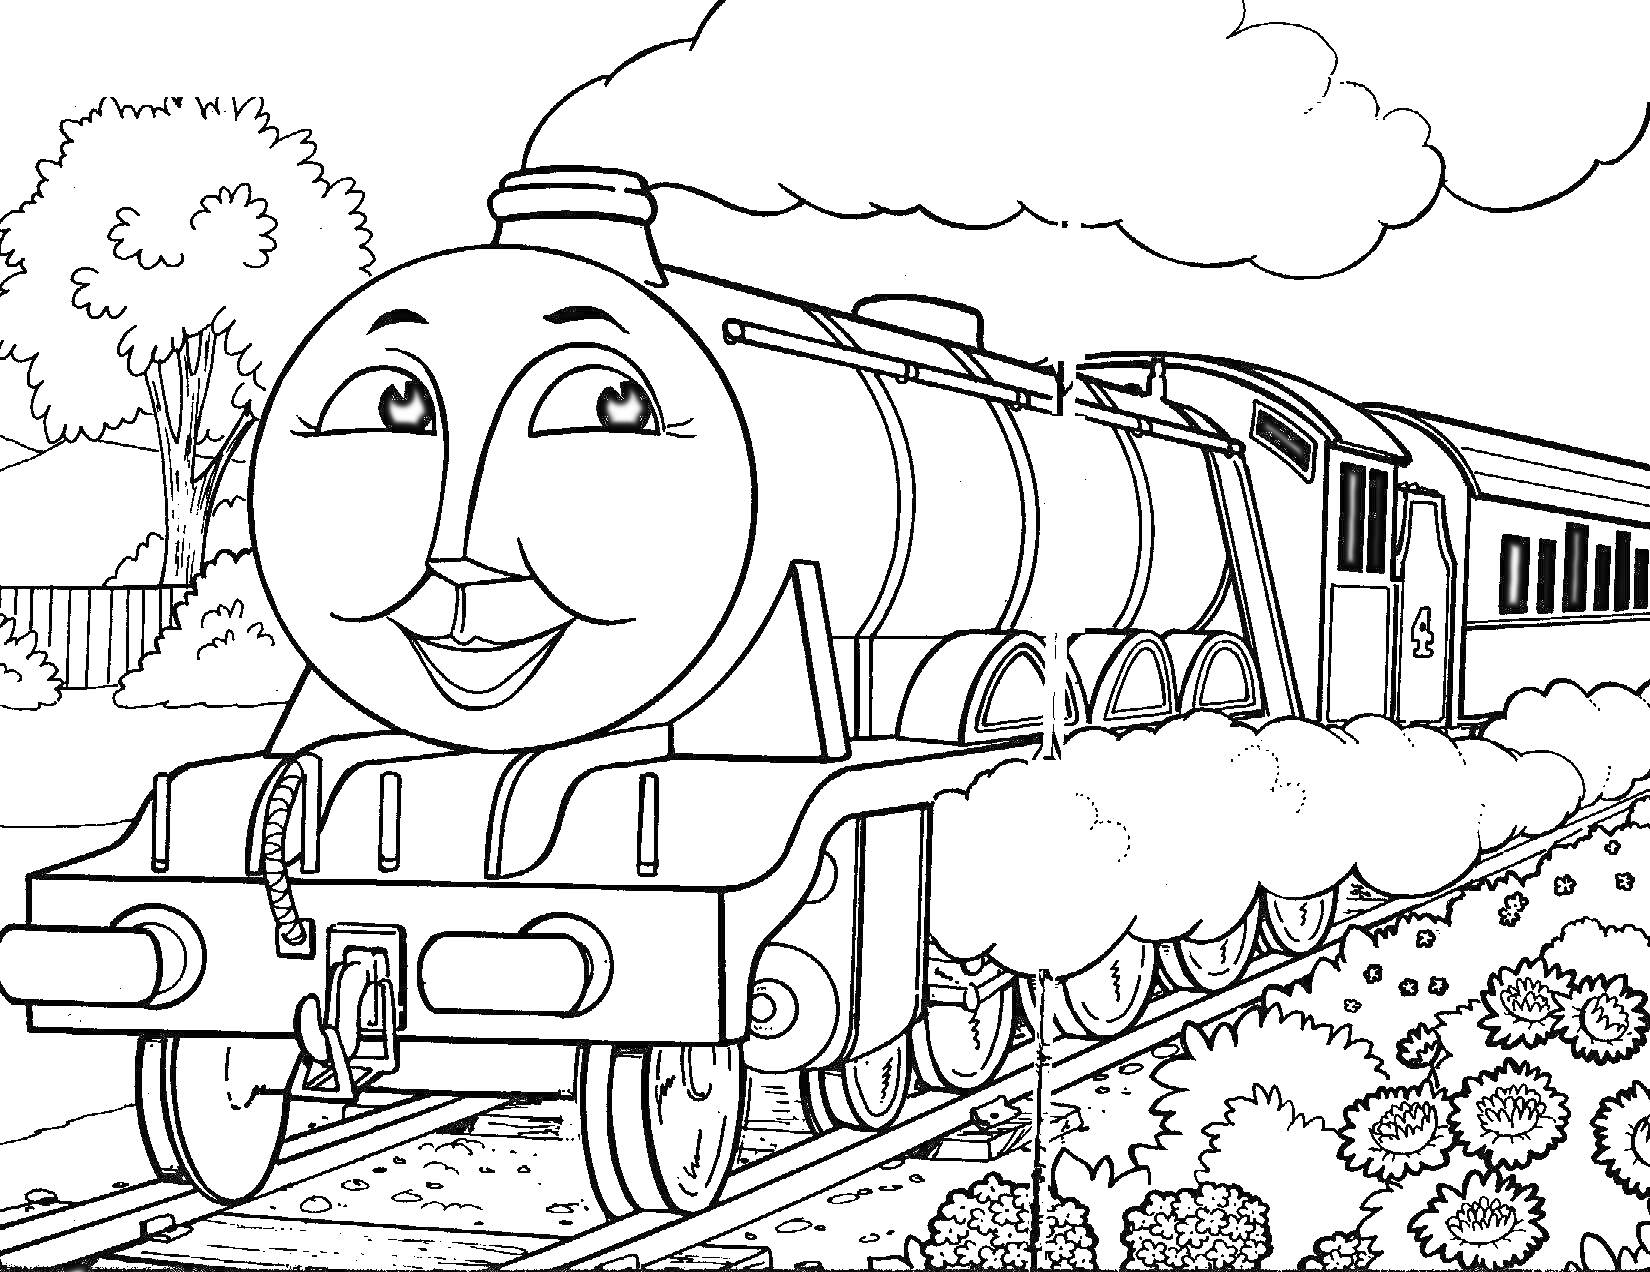 Раскраска Паровозик Томас на железной дороге с пассажирским вагоном на фоне деревьев и кустов